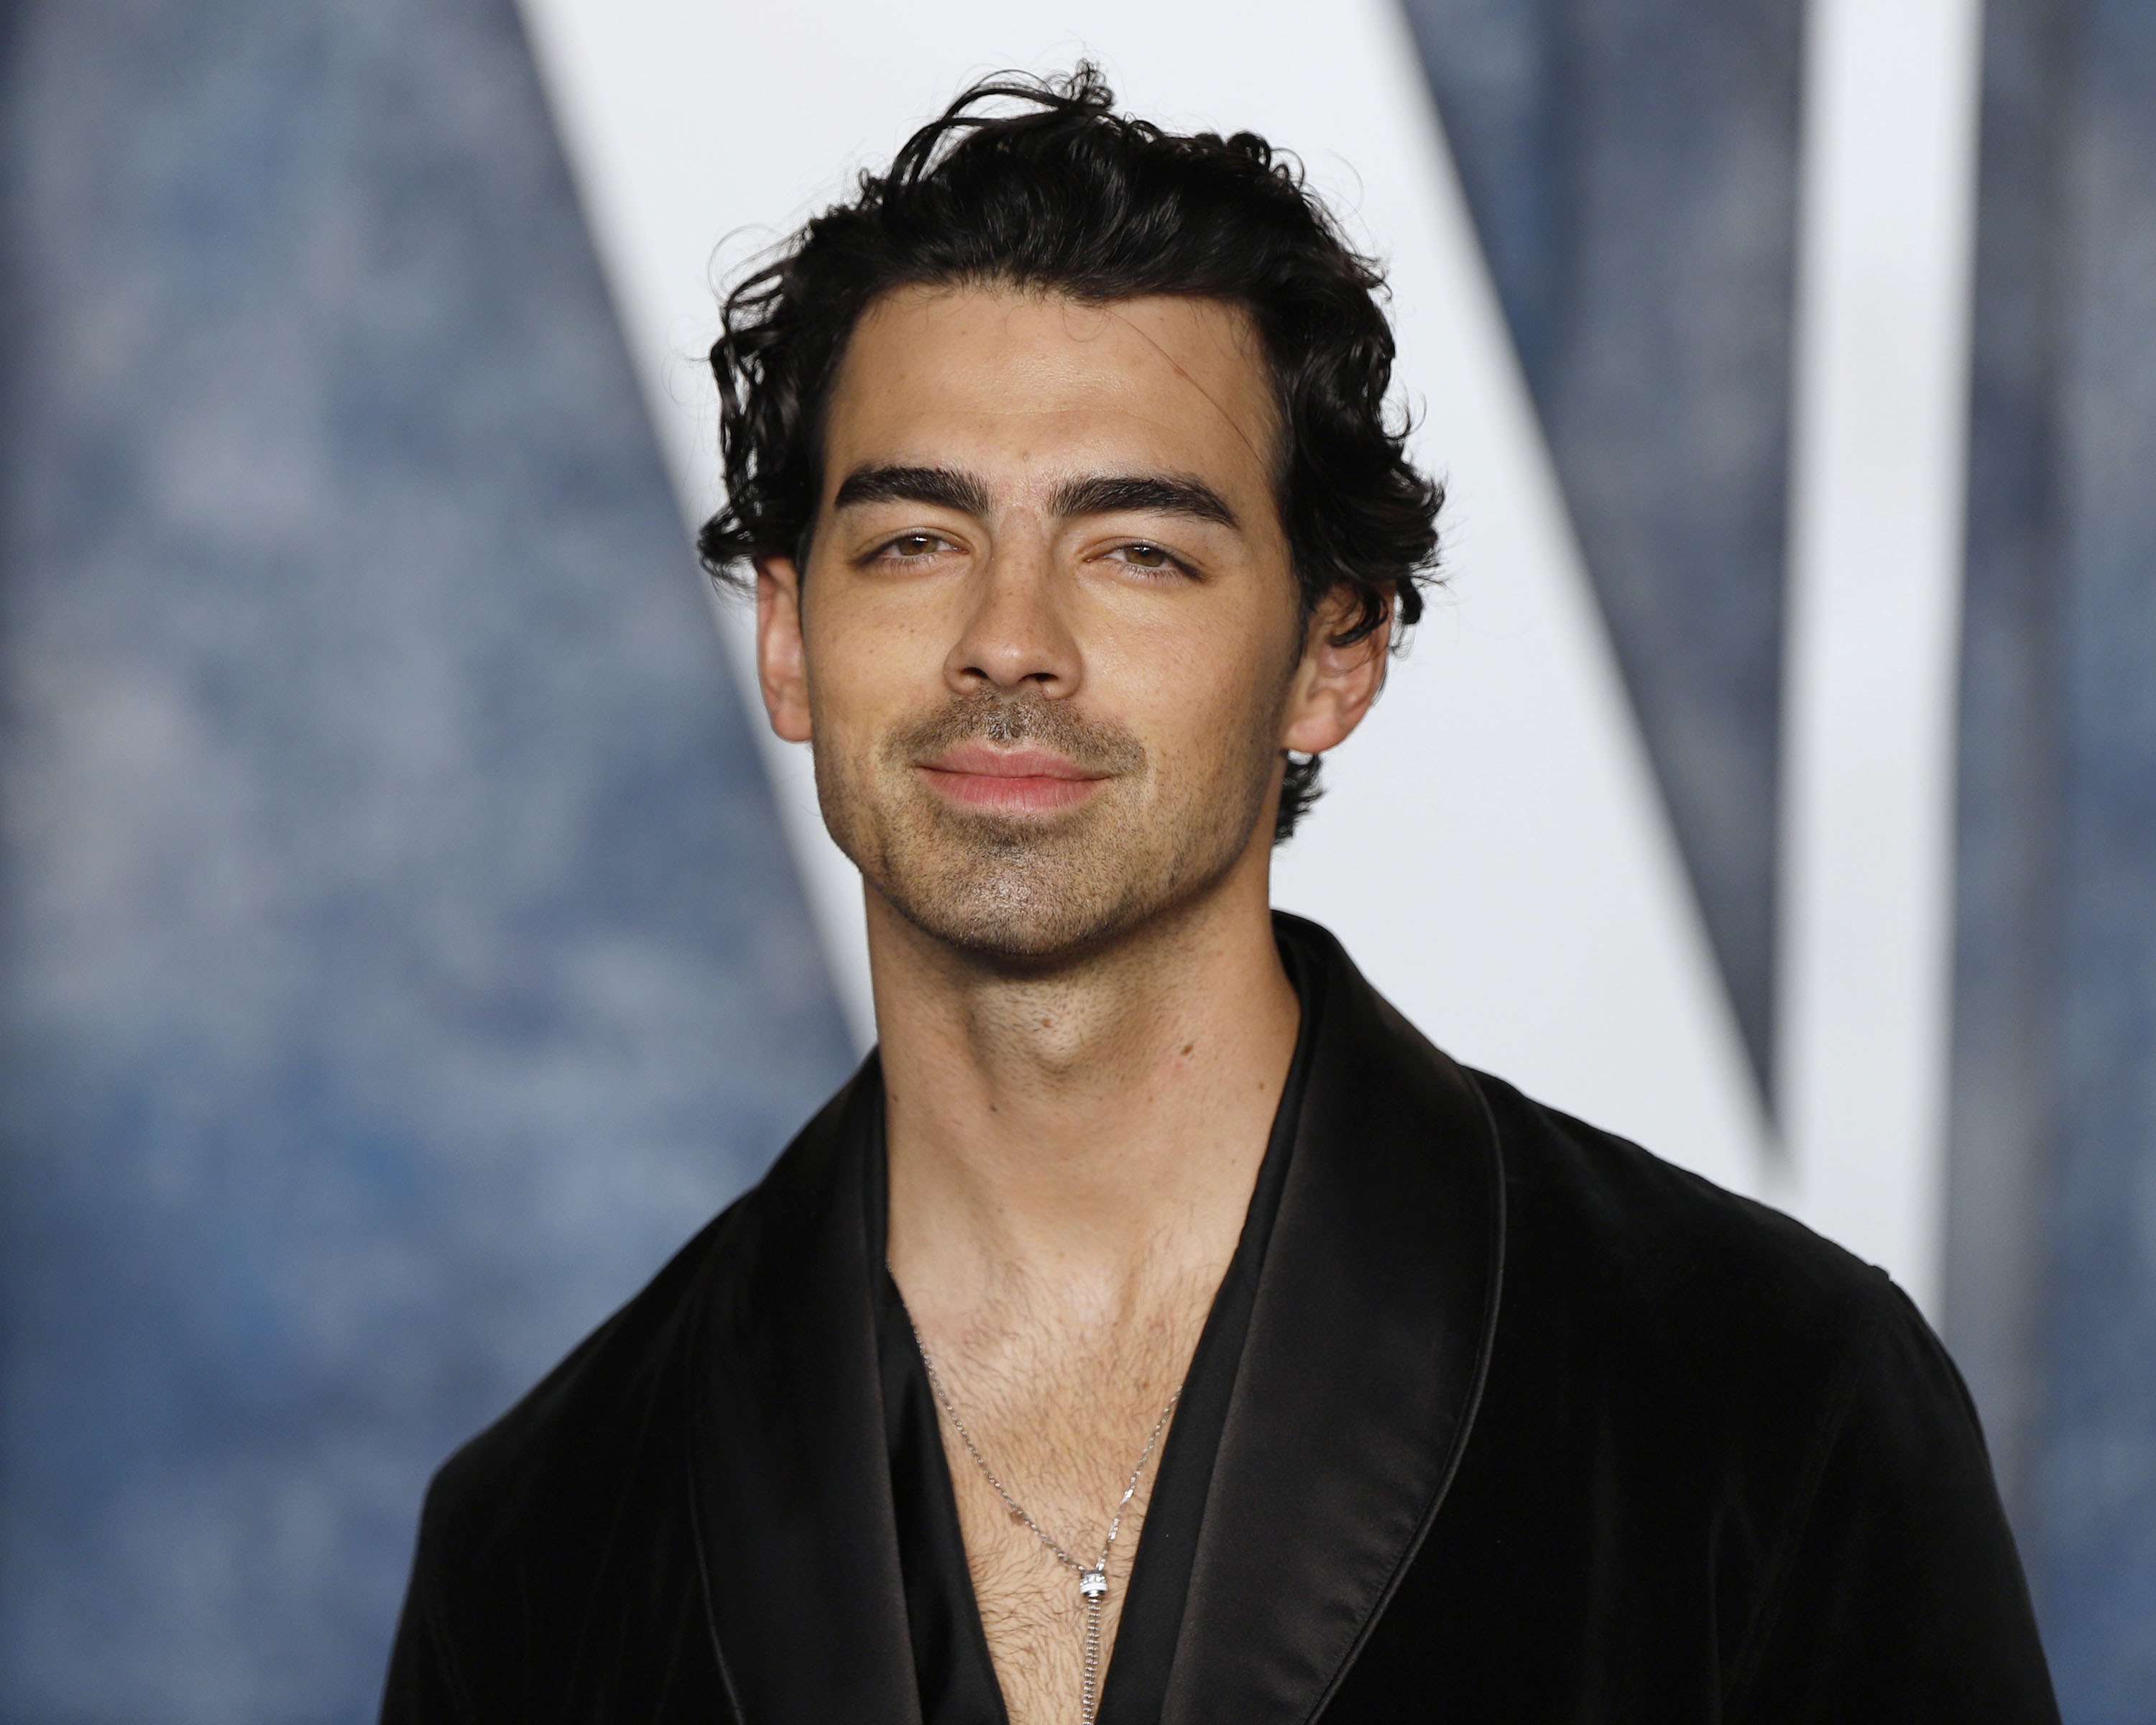 Joe Jonas posing on a red carpet